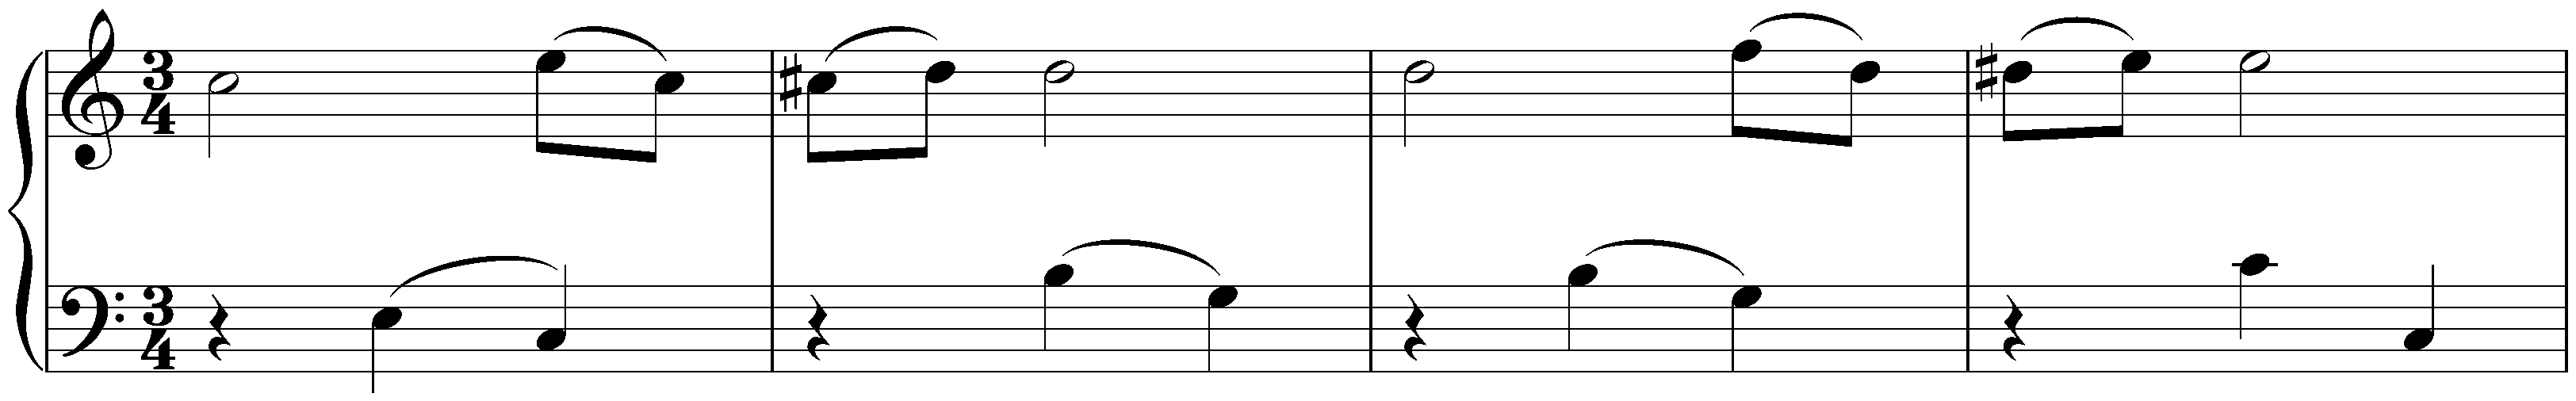 Notebook for Nannerl, KV 1–8; 26. Minuet in C major, KV 6/3i